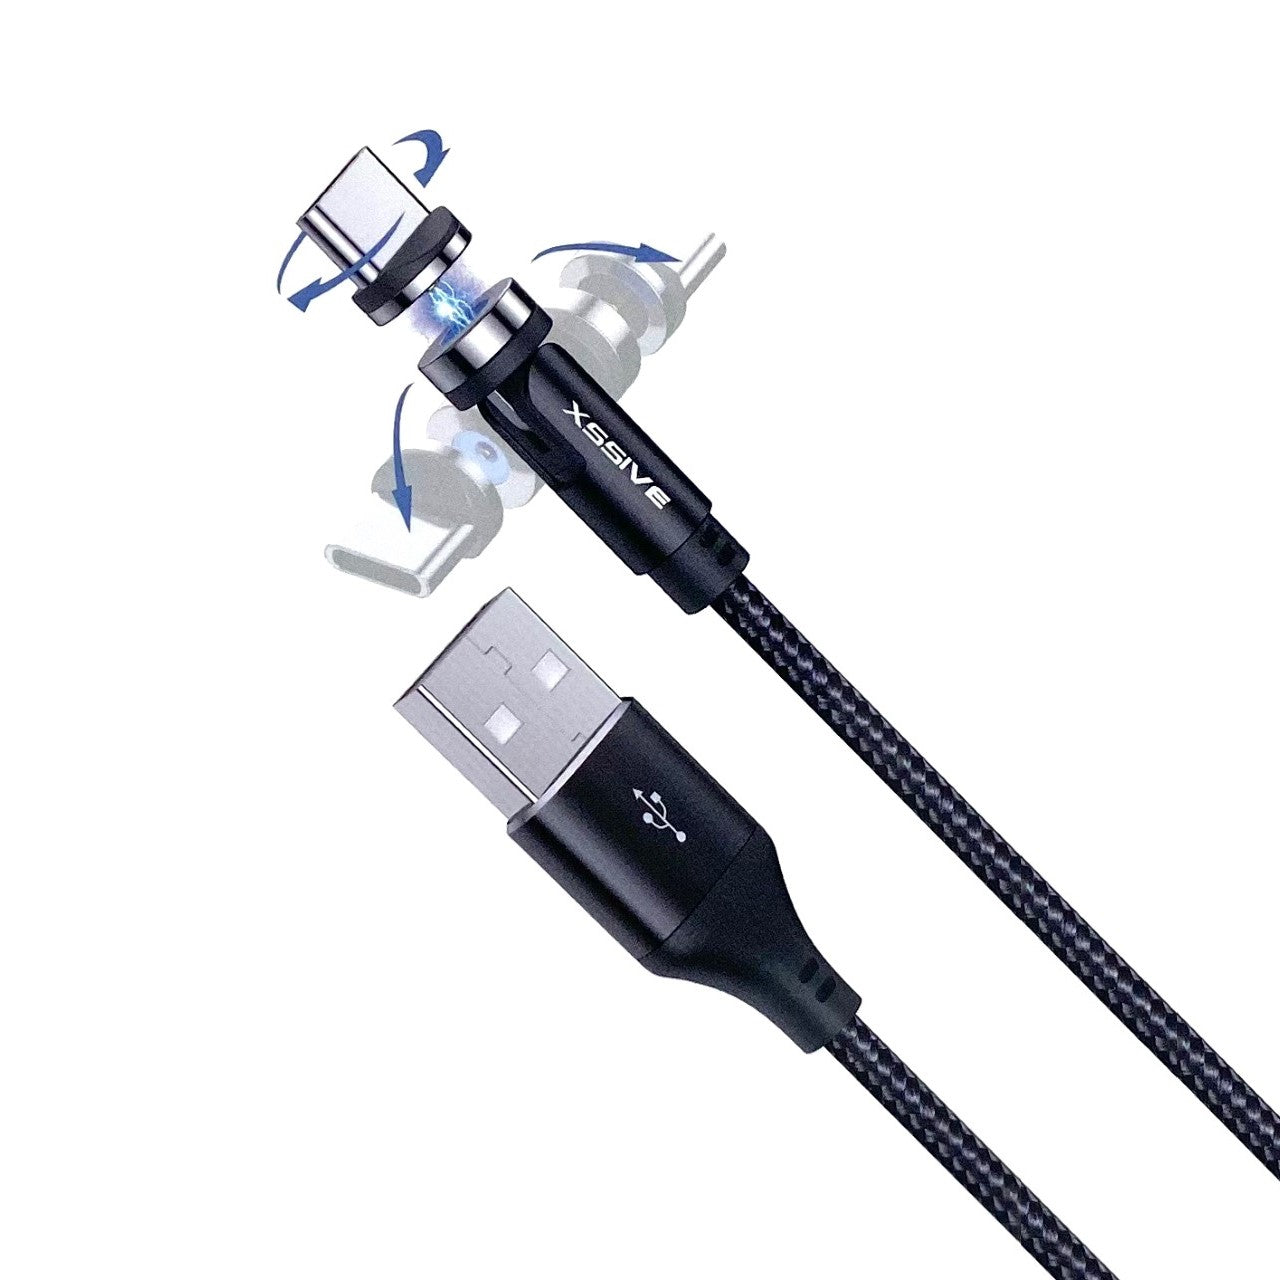 ding Beschuldiging Waterig Magnetische USB-C En Micro USB Kabel Voor Samsung Android - 1 meter -  KwaliteitLader.nl